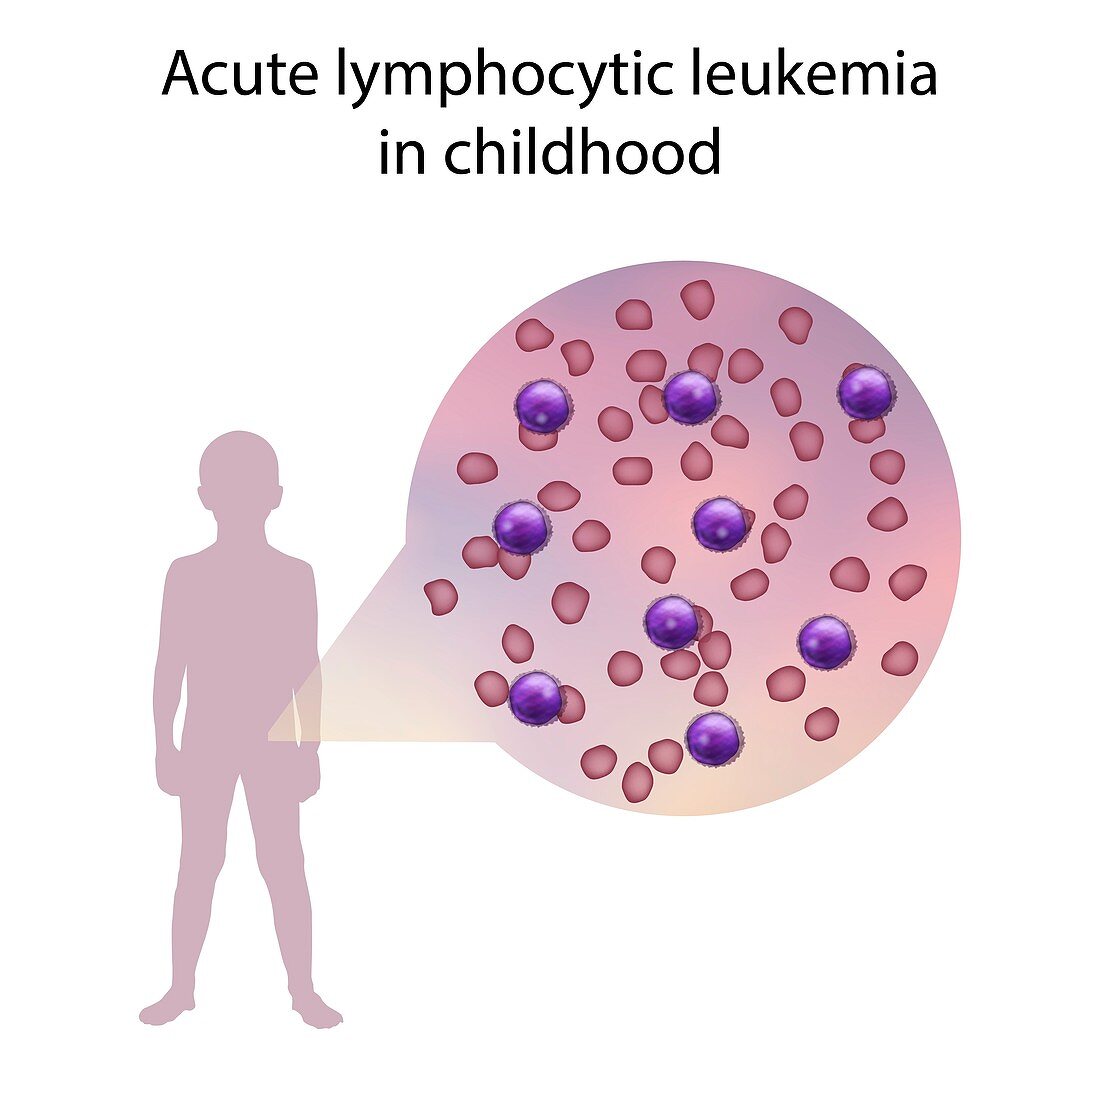 Acute lymphocytic leukaemia in childhood,illustration